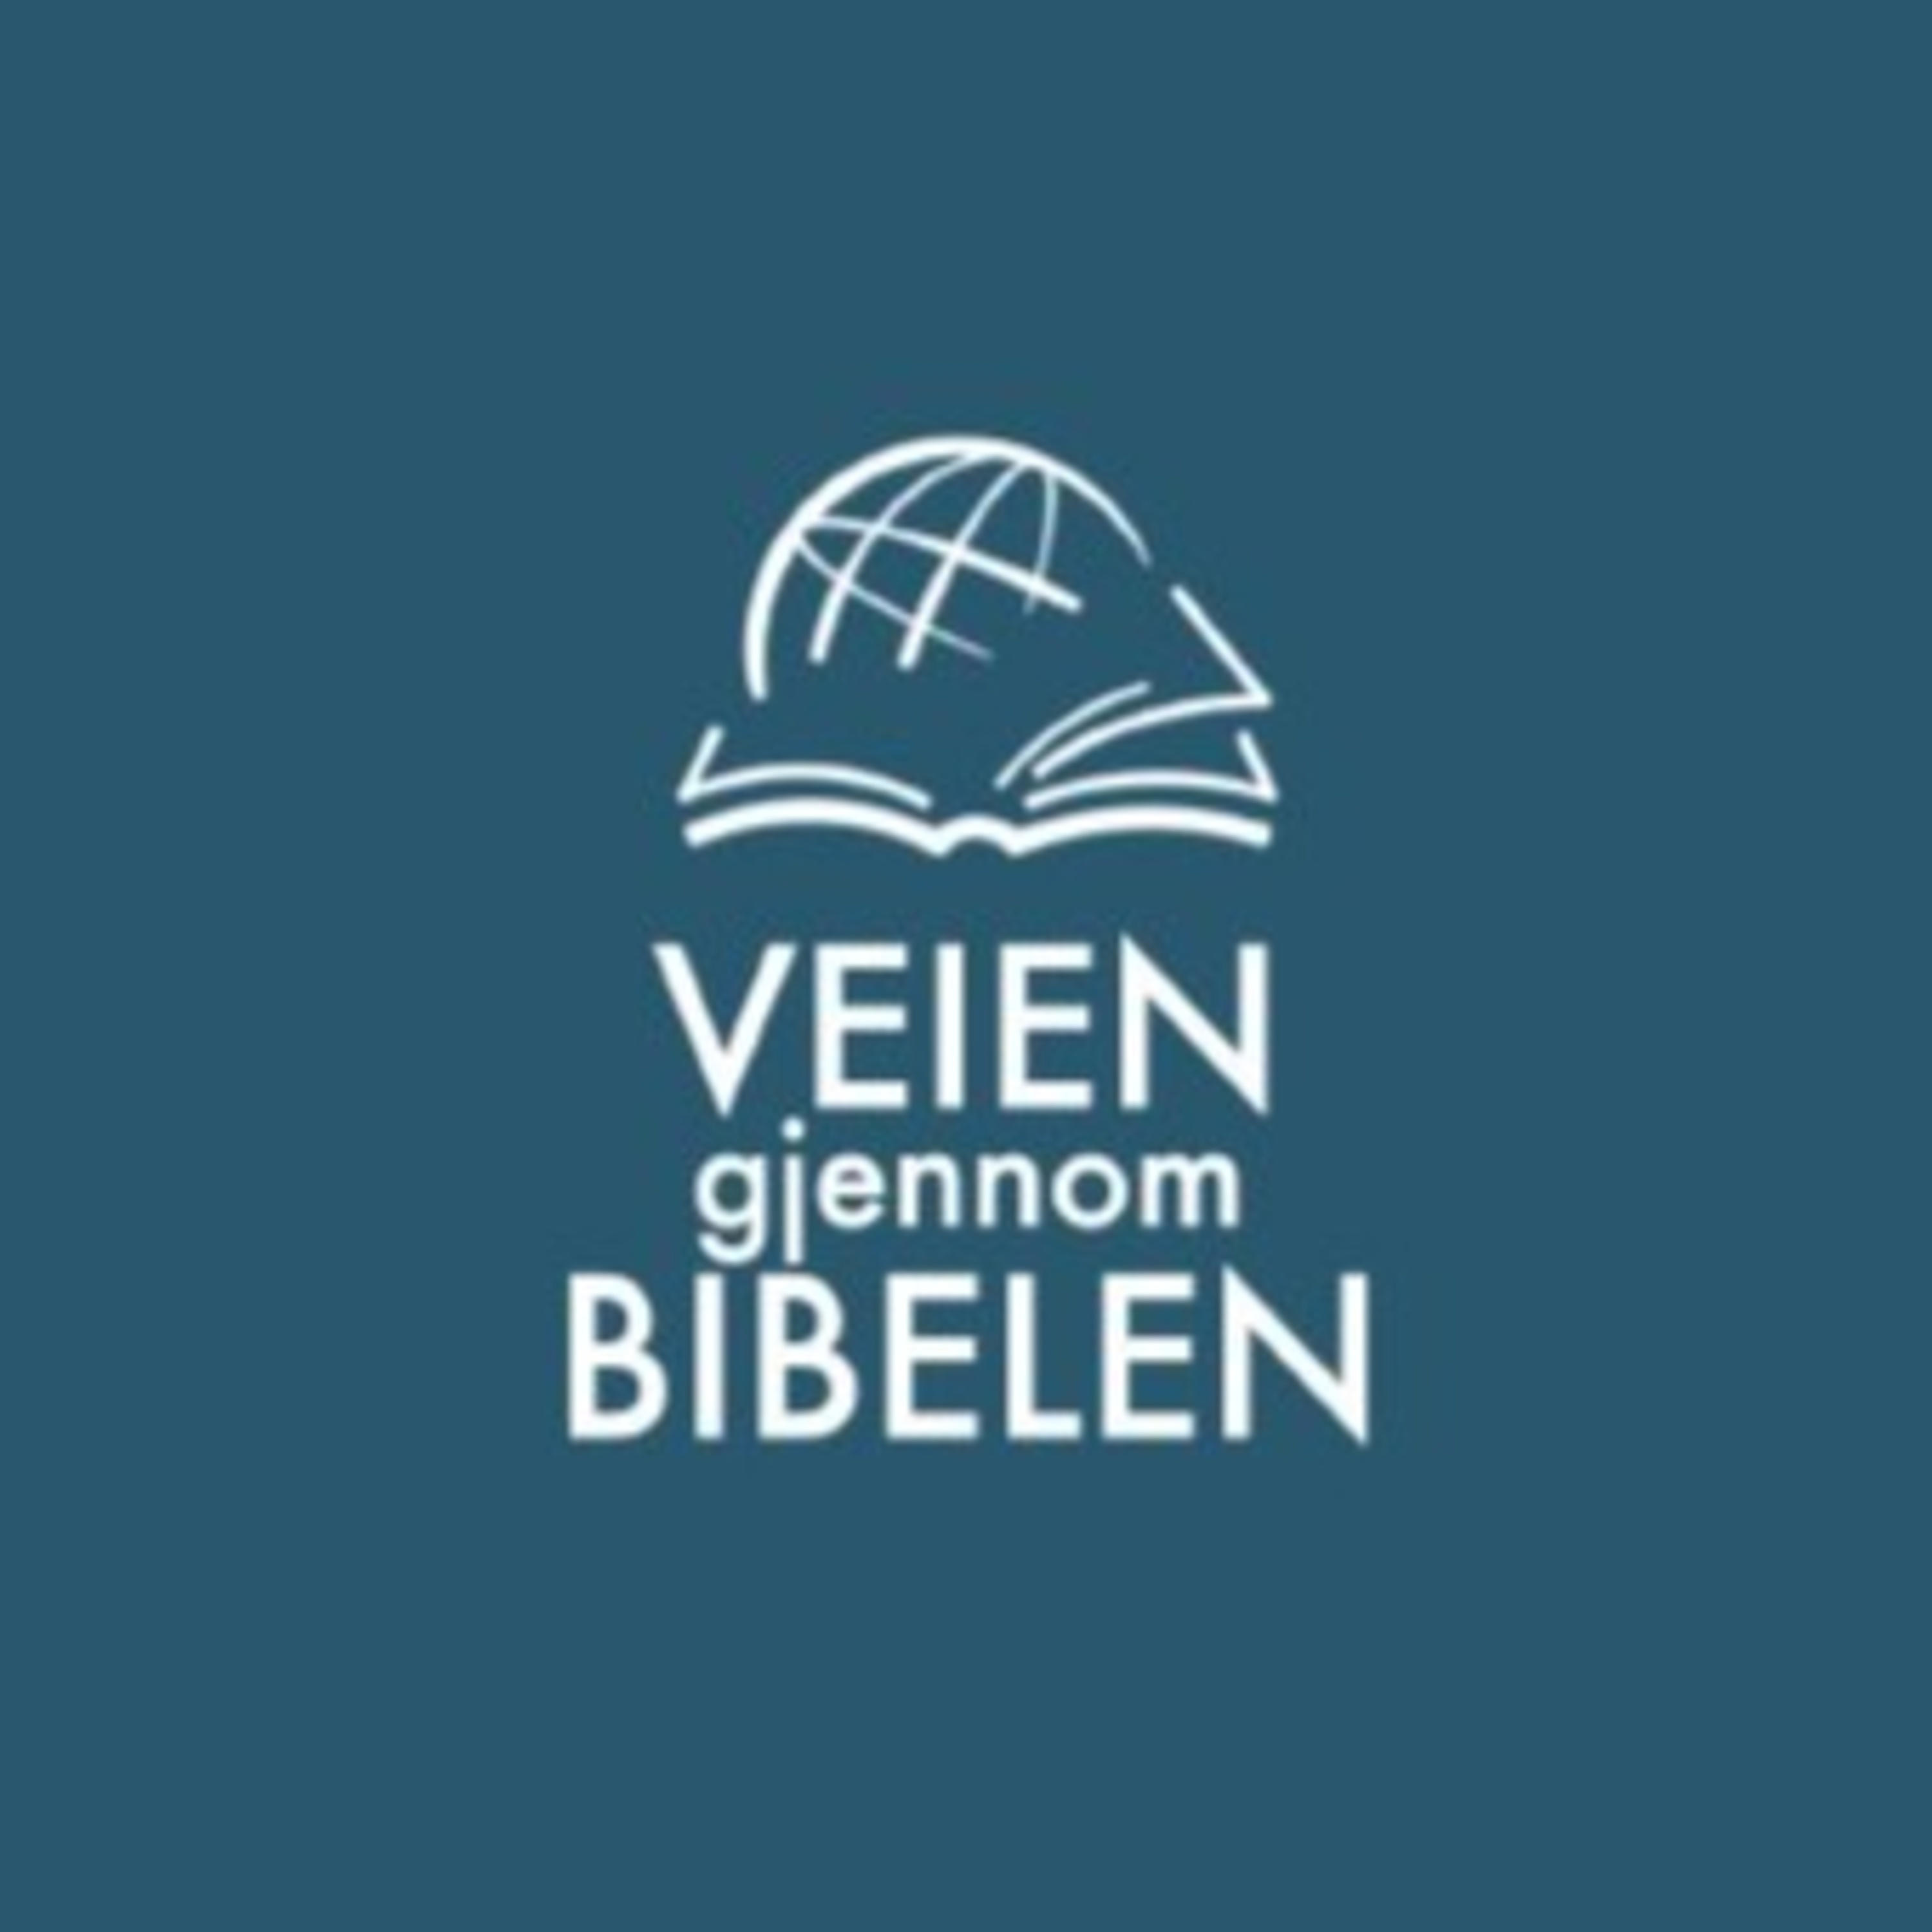 Show artwork for Veien gjennom Bibelen - en podcast fra P7 Kristen Riksradio